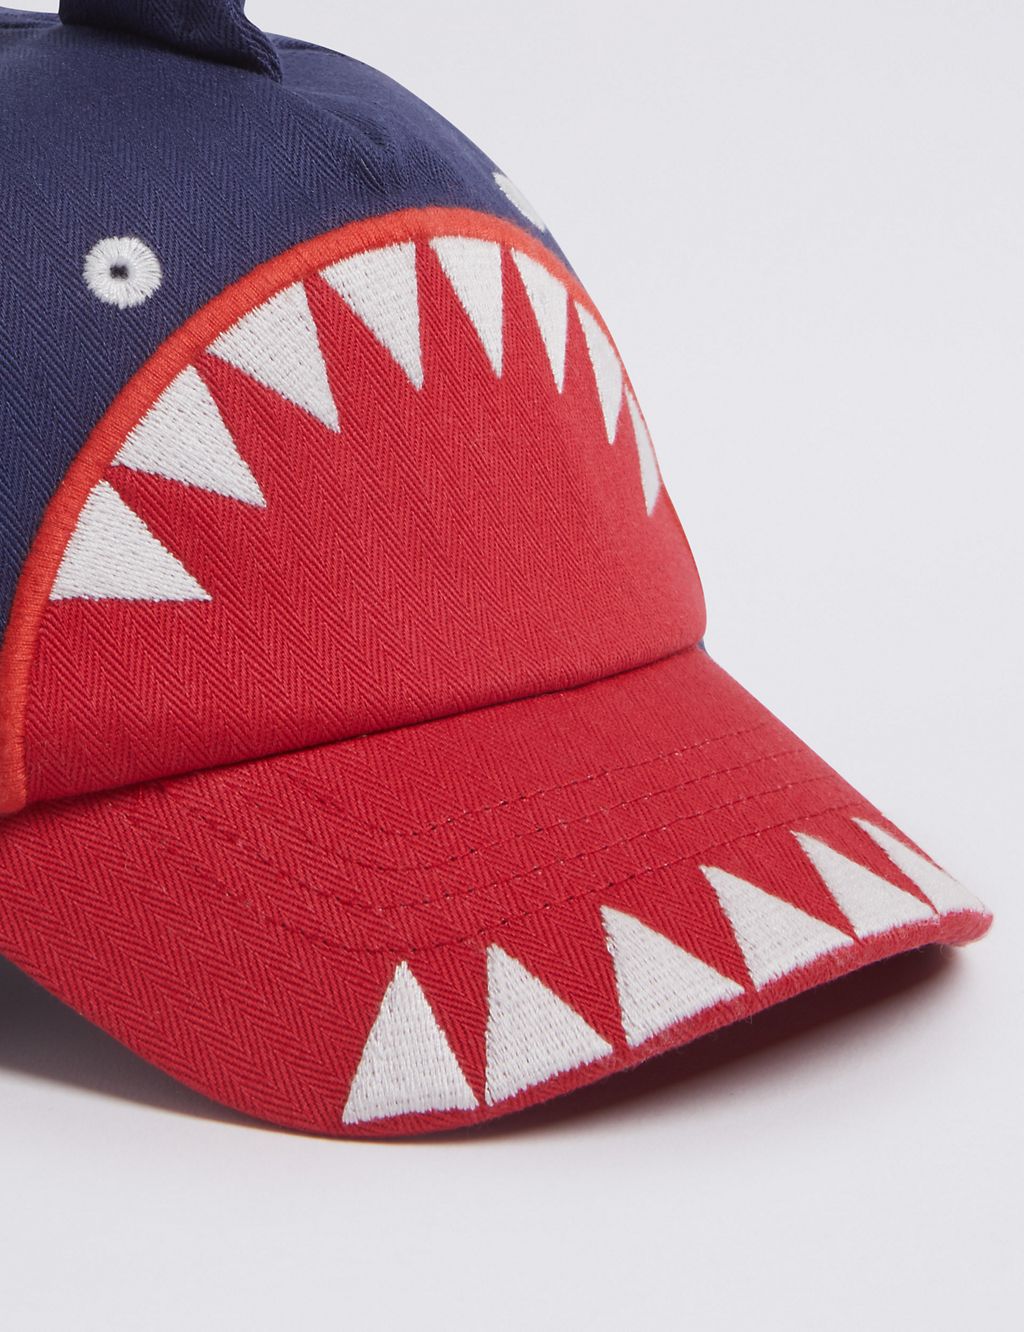 Kids’ Pure Cotton Shark Baseball Cap (0-6 Years) 2 of 3